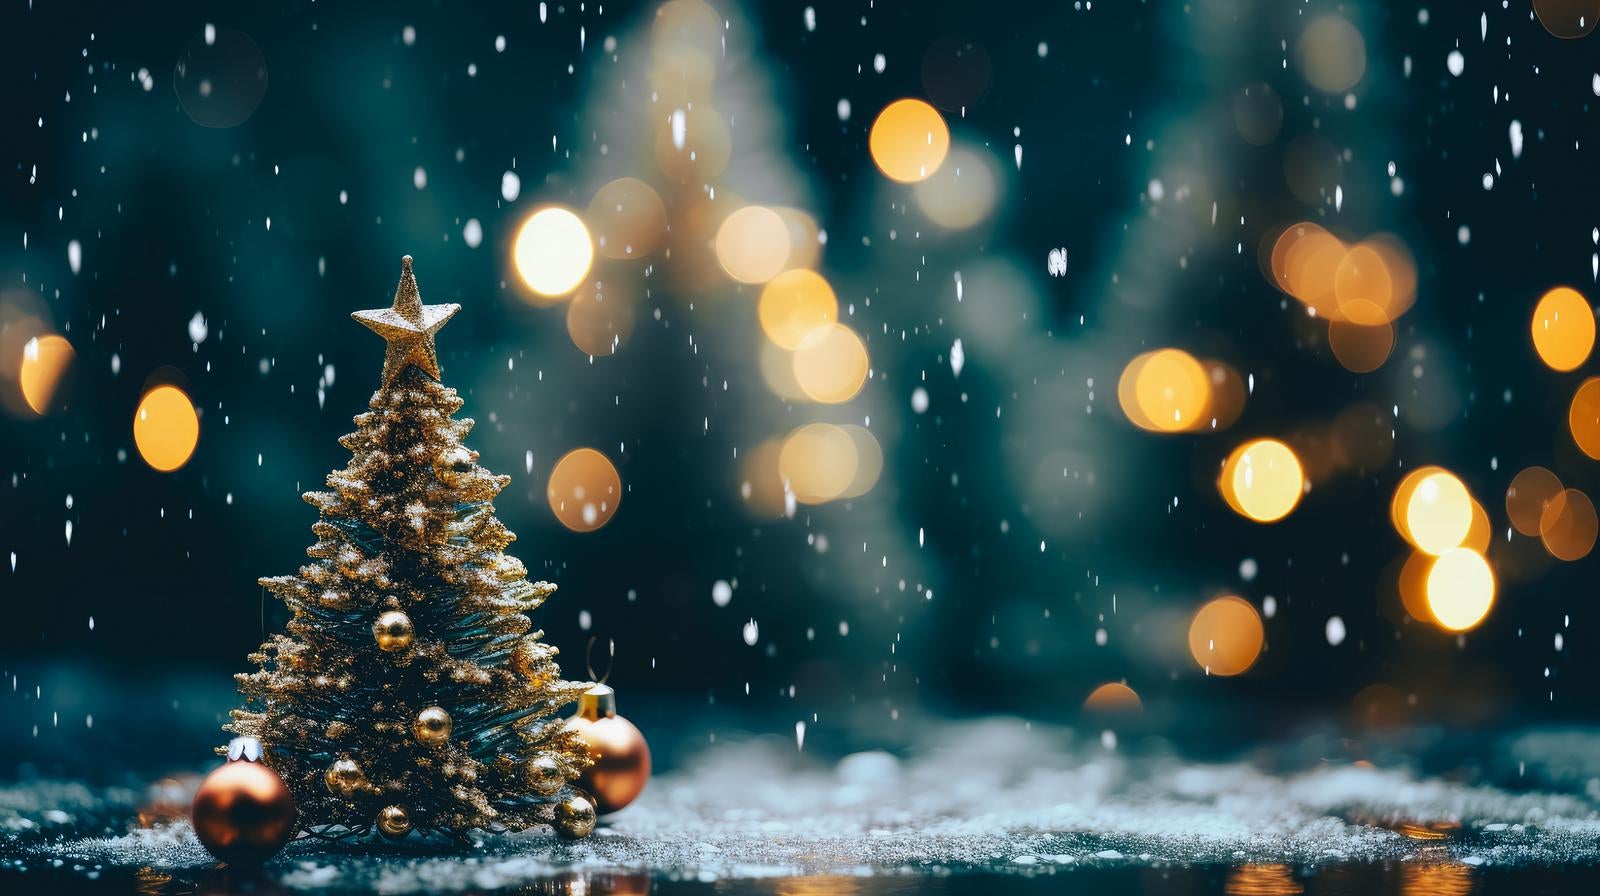 「クリスマスツリーと舞い散る雪」の写真